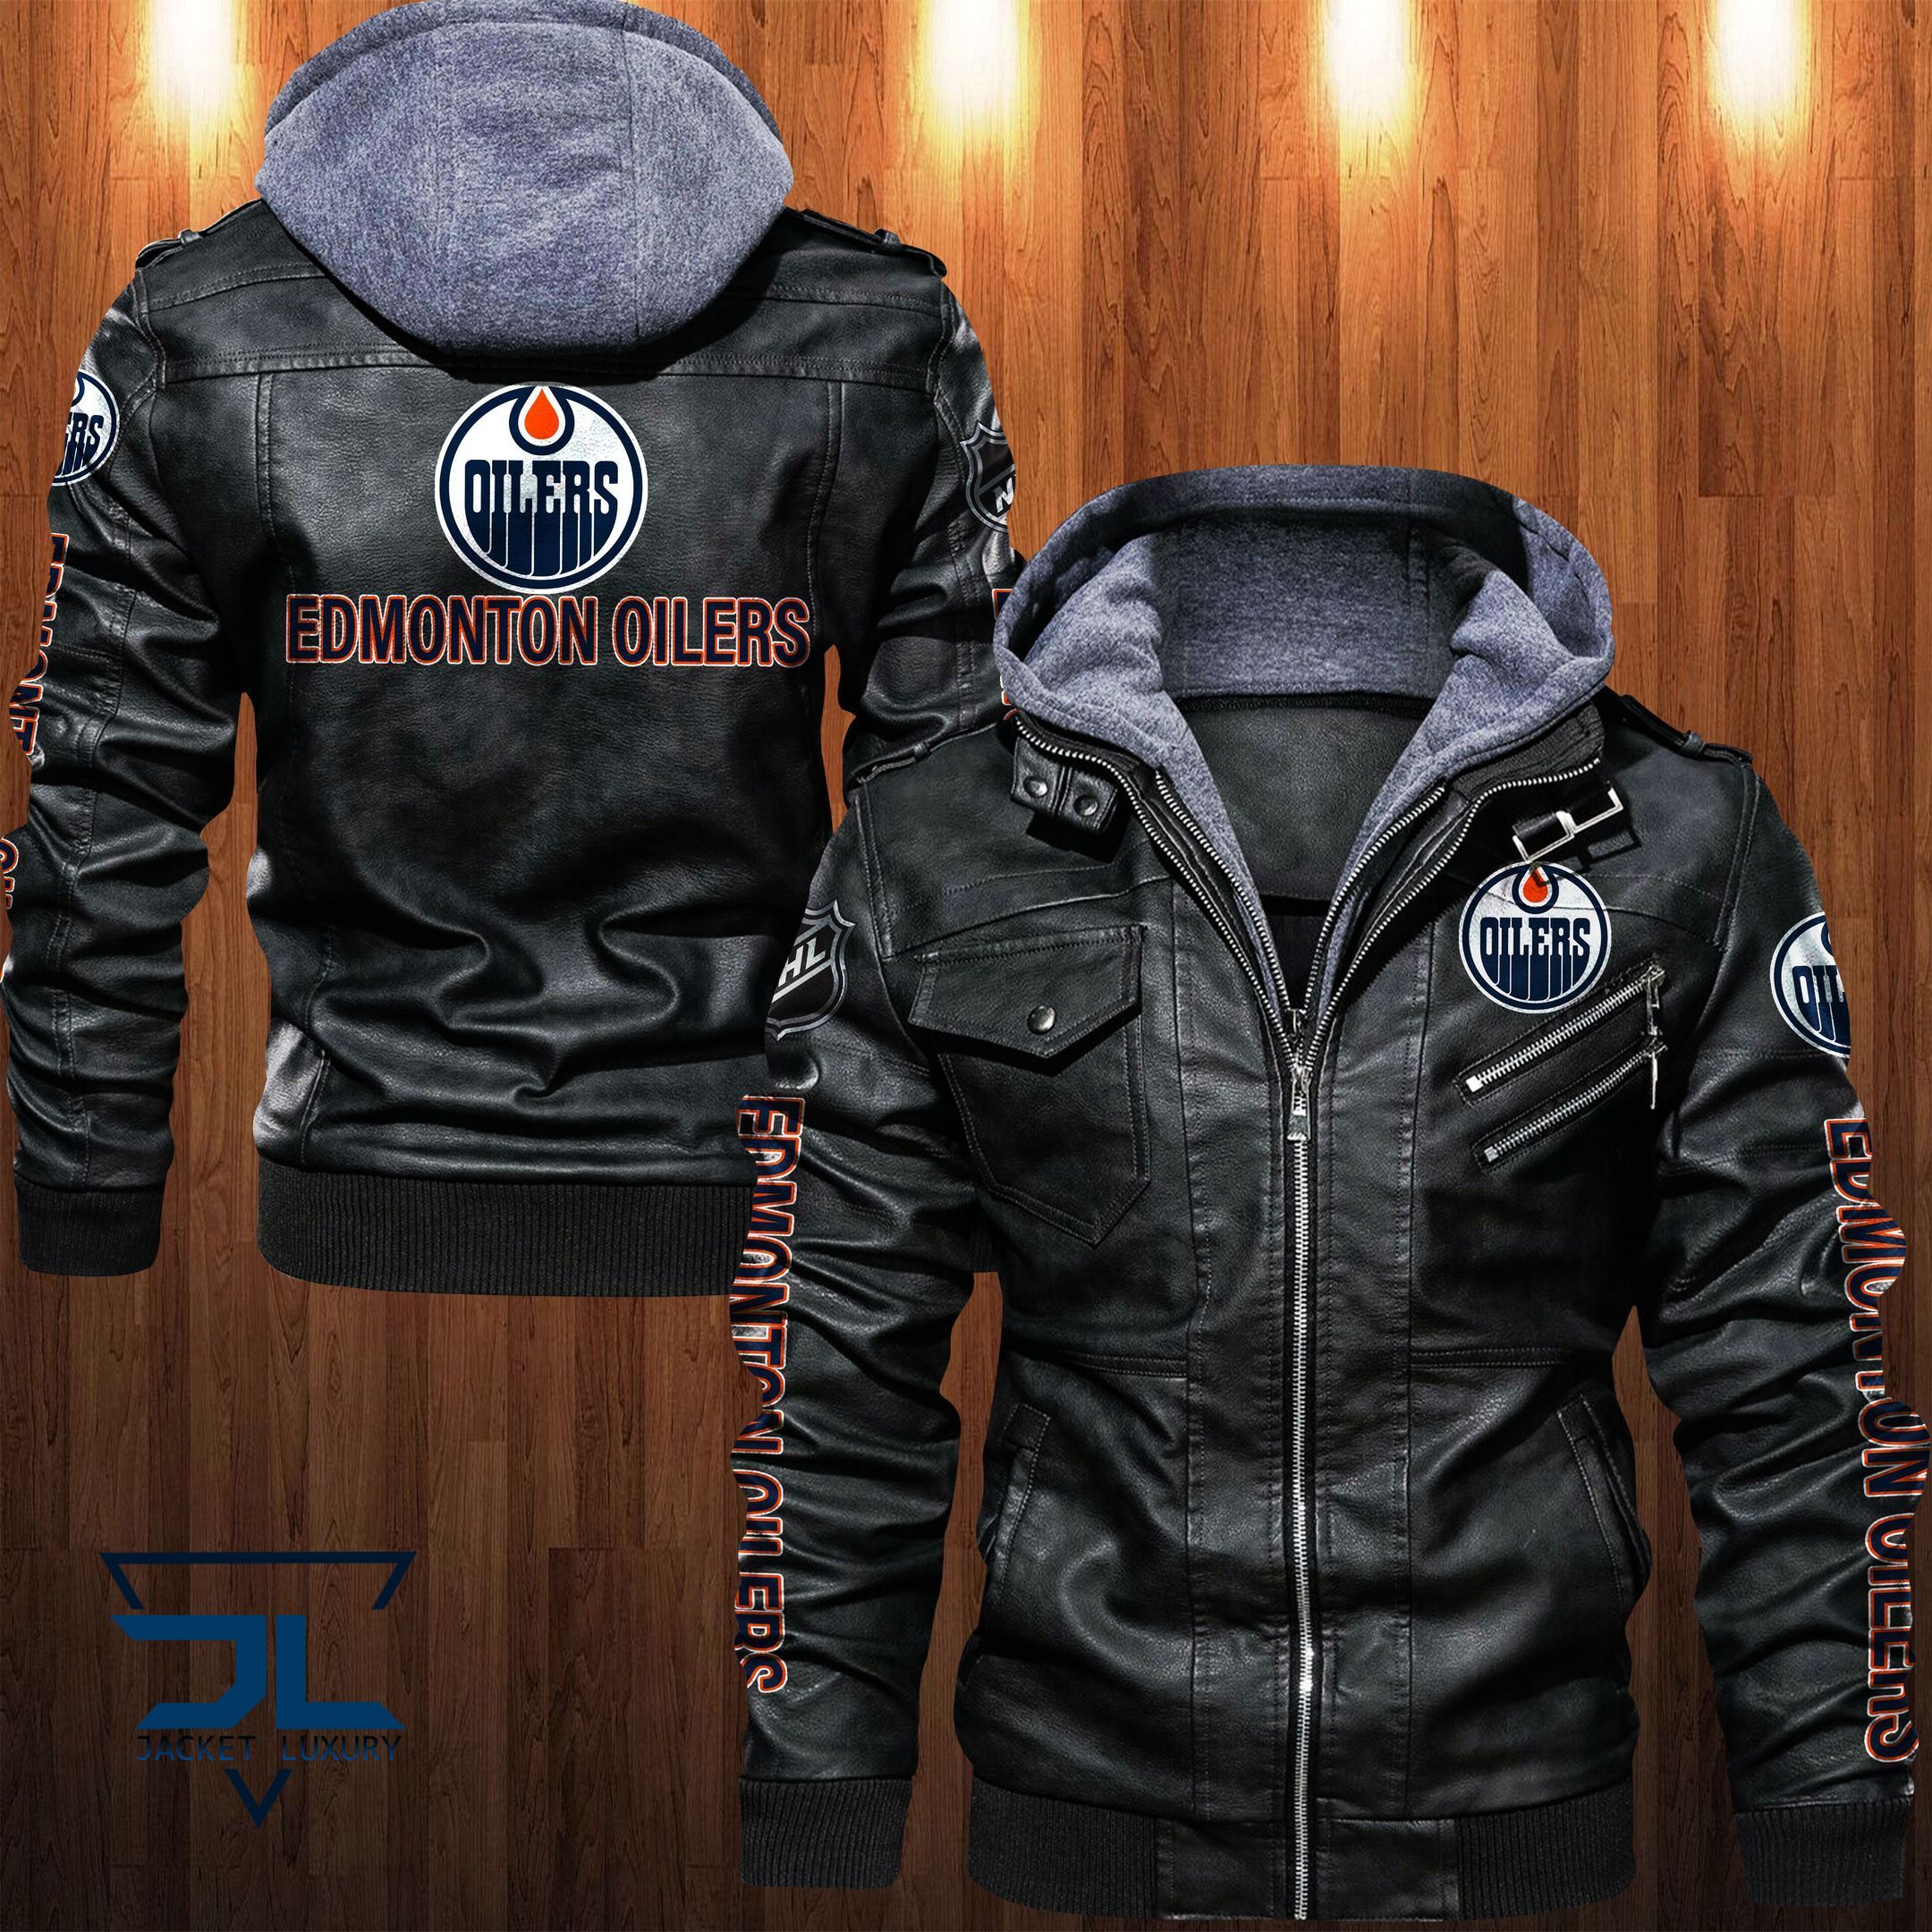 Get the best jackets under $100! 357